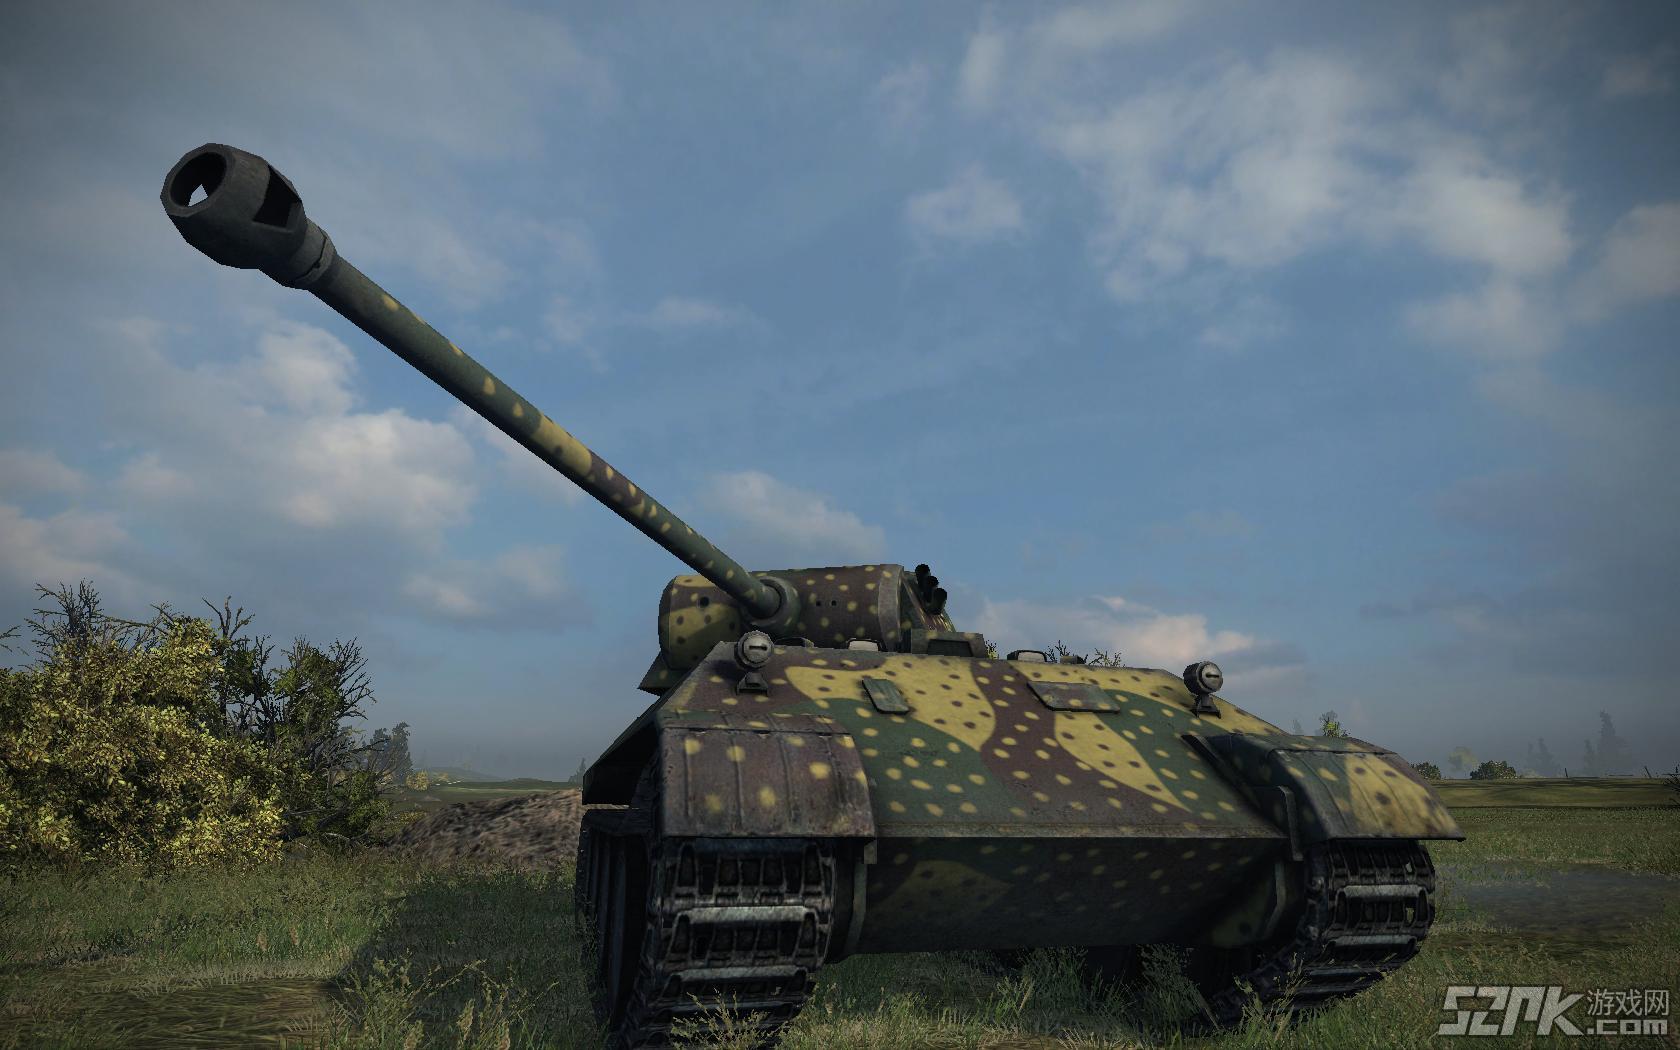 新坦克截图欣赏之D系坦克VK3002(M)